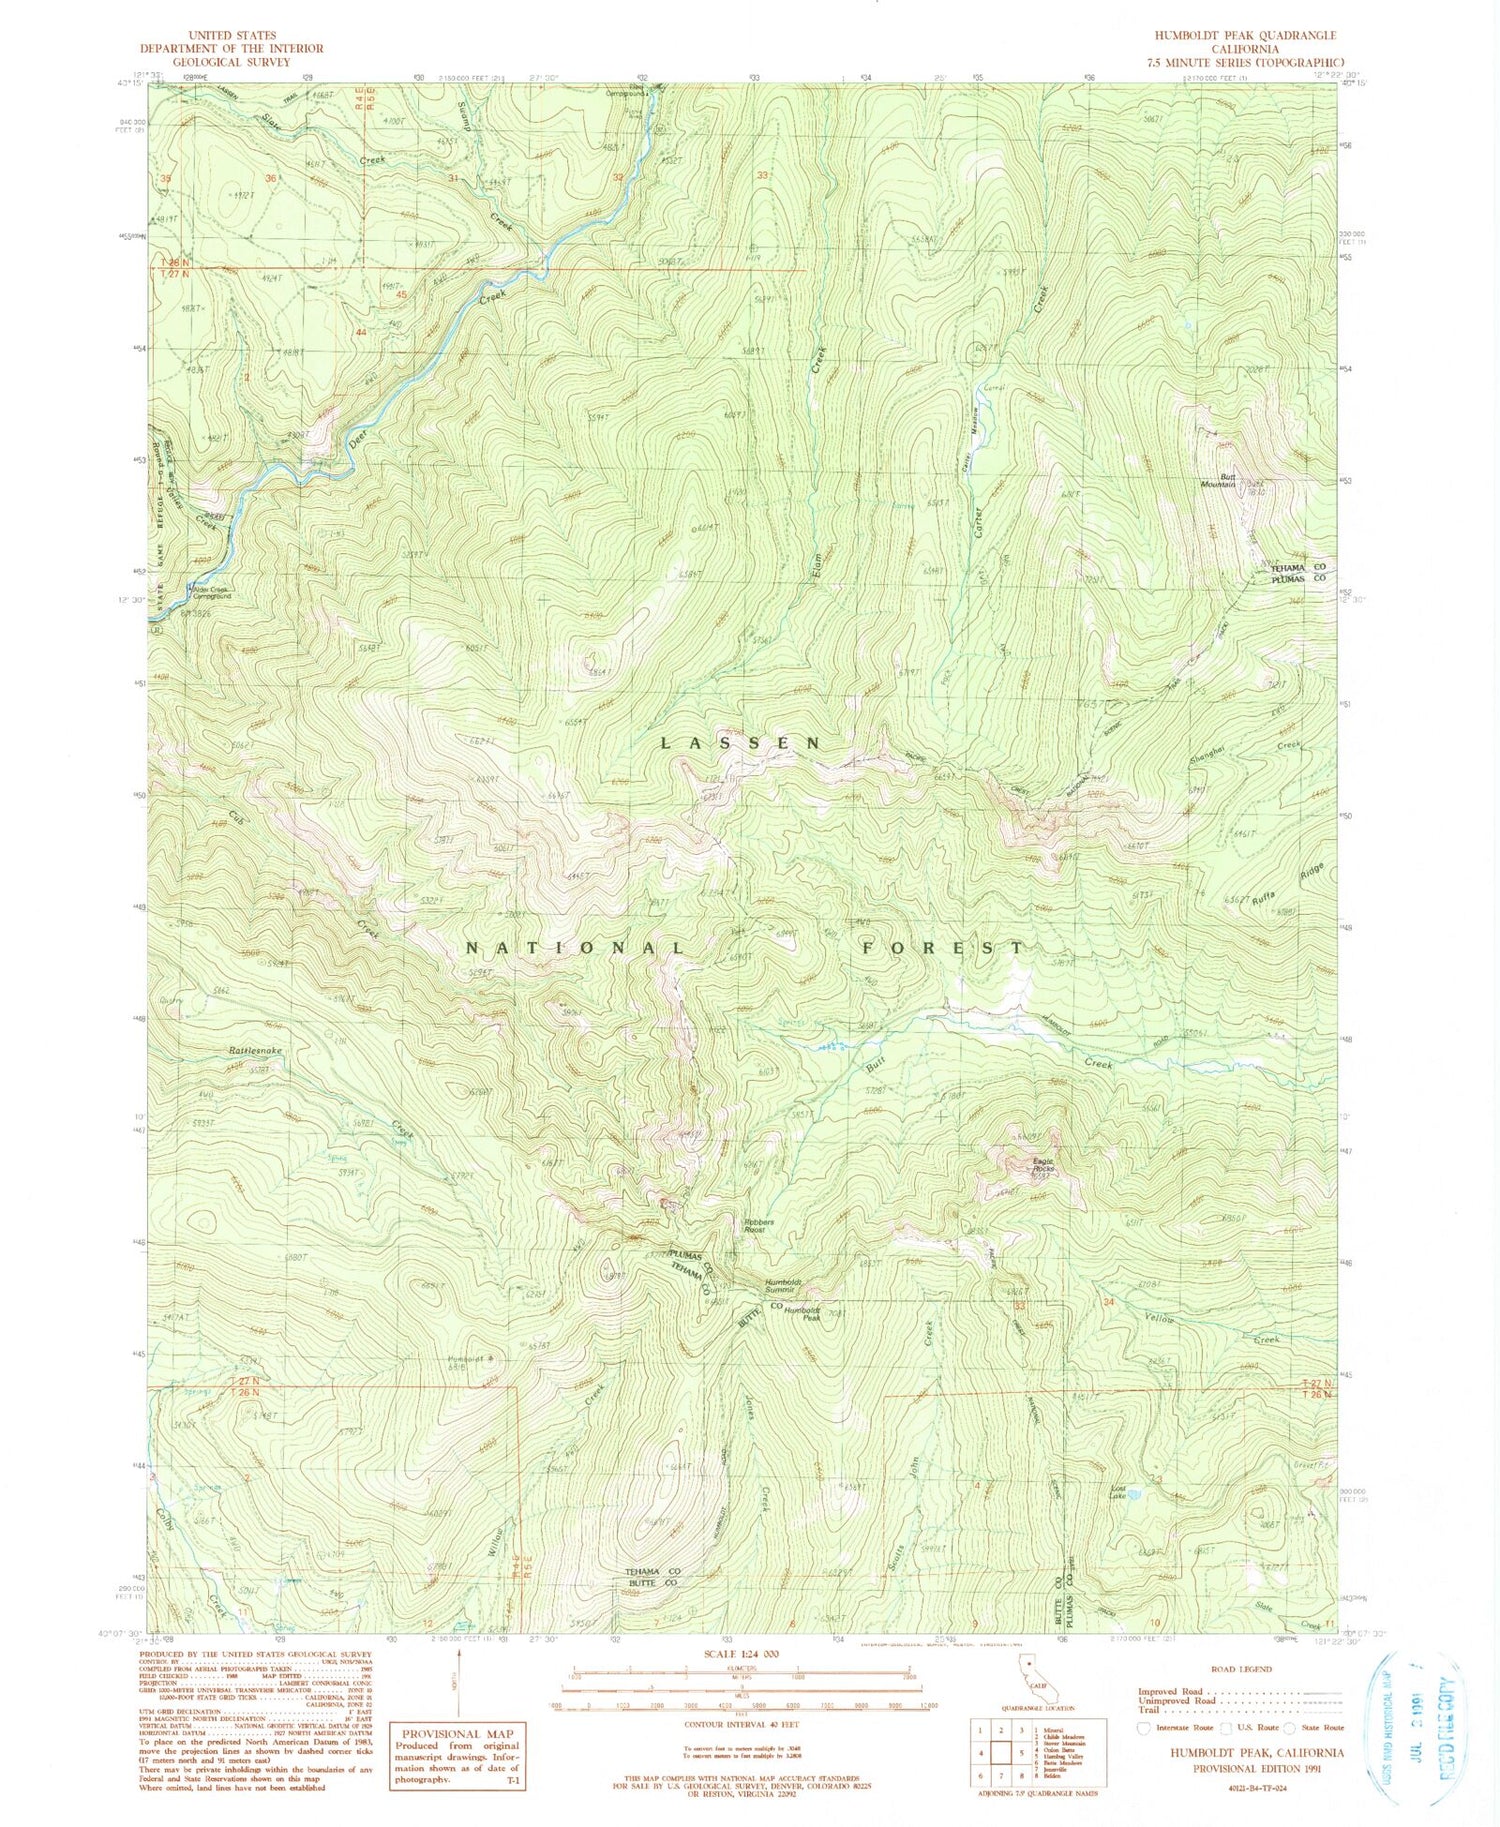 Classic USGS Humboldt Peak California 7.5'x7.5' Topo Map Image